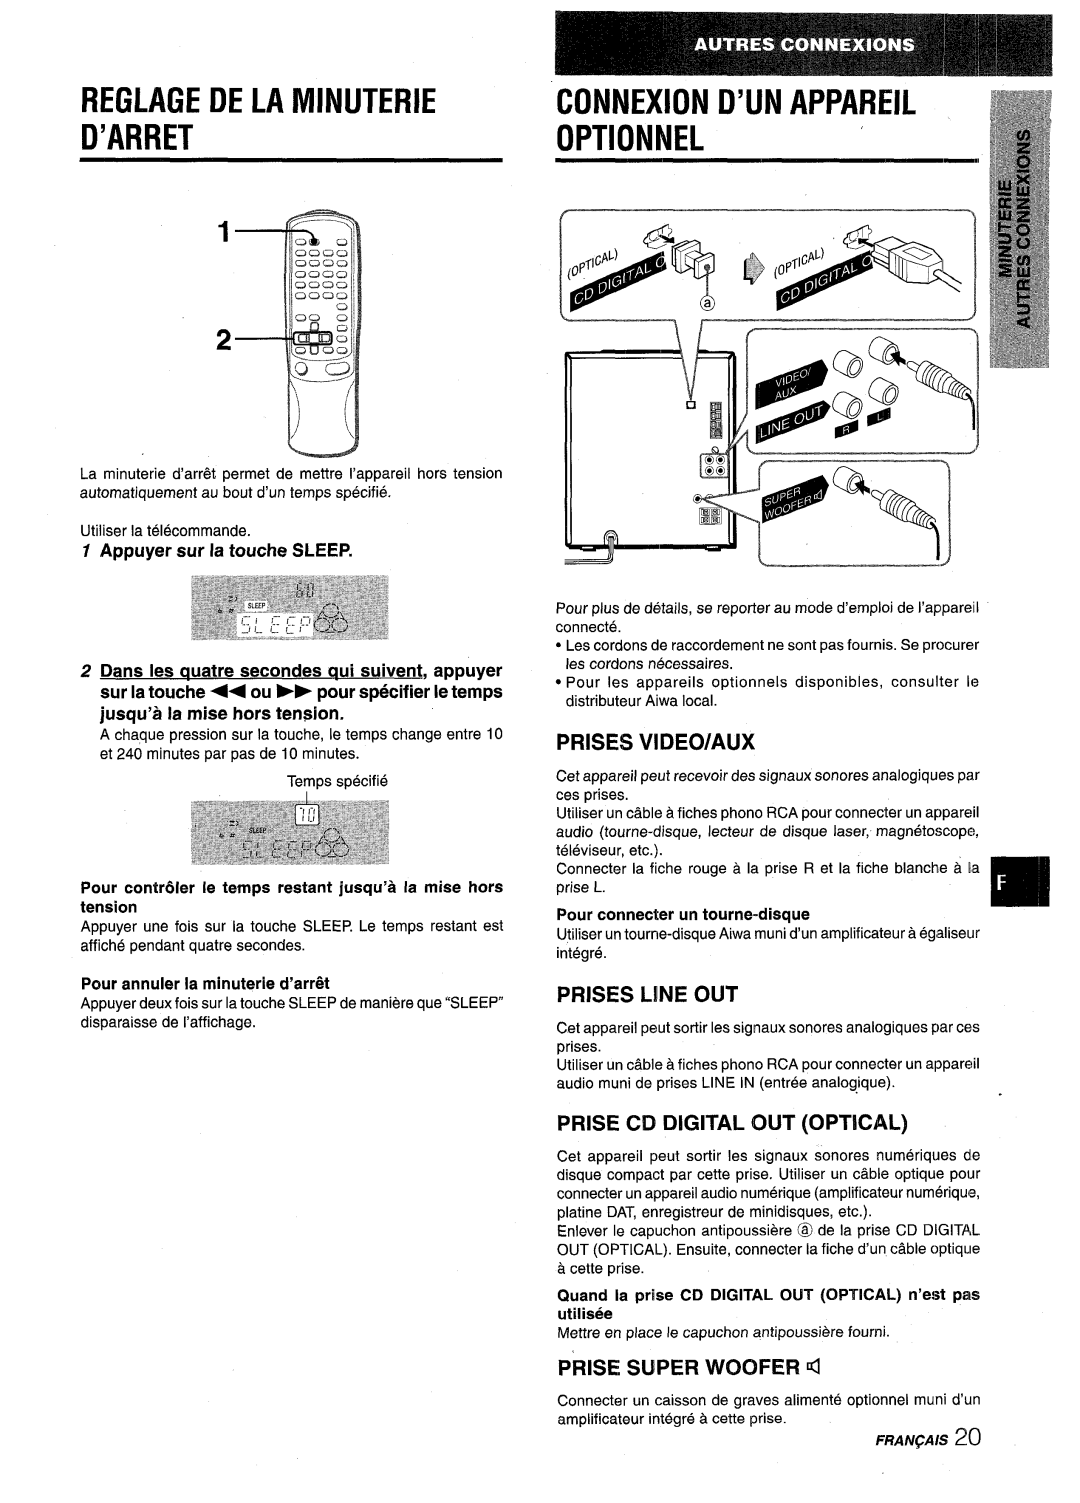 Aiwa NSX-V9000 manual D’Arret, o‘TIONNEL, cINNEXION D’UN APPAREIL, Prises Video/Aux, Prises L!Ne Out, PRISE SUPER WOOFER d 